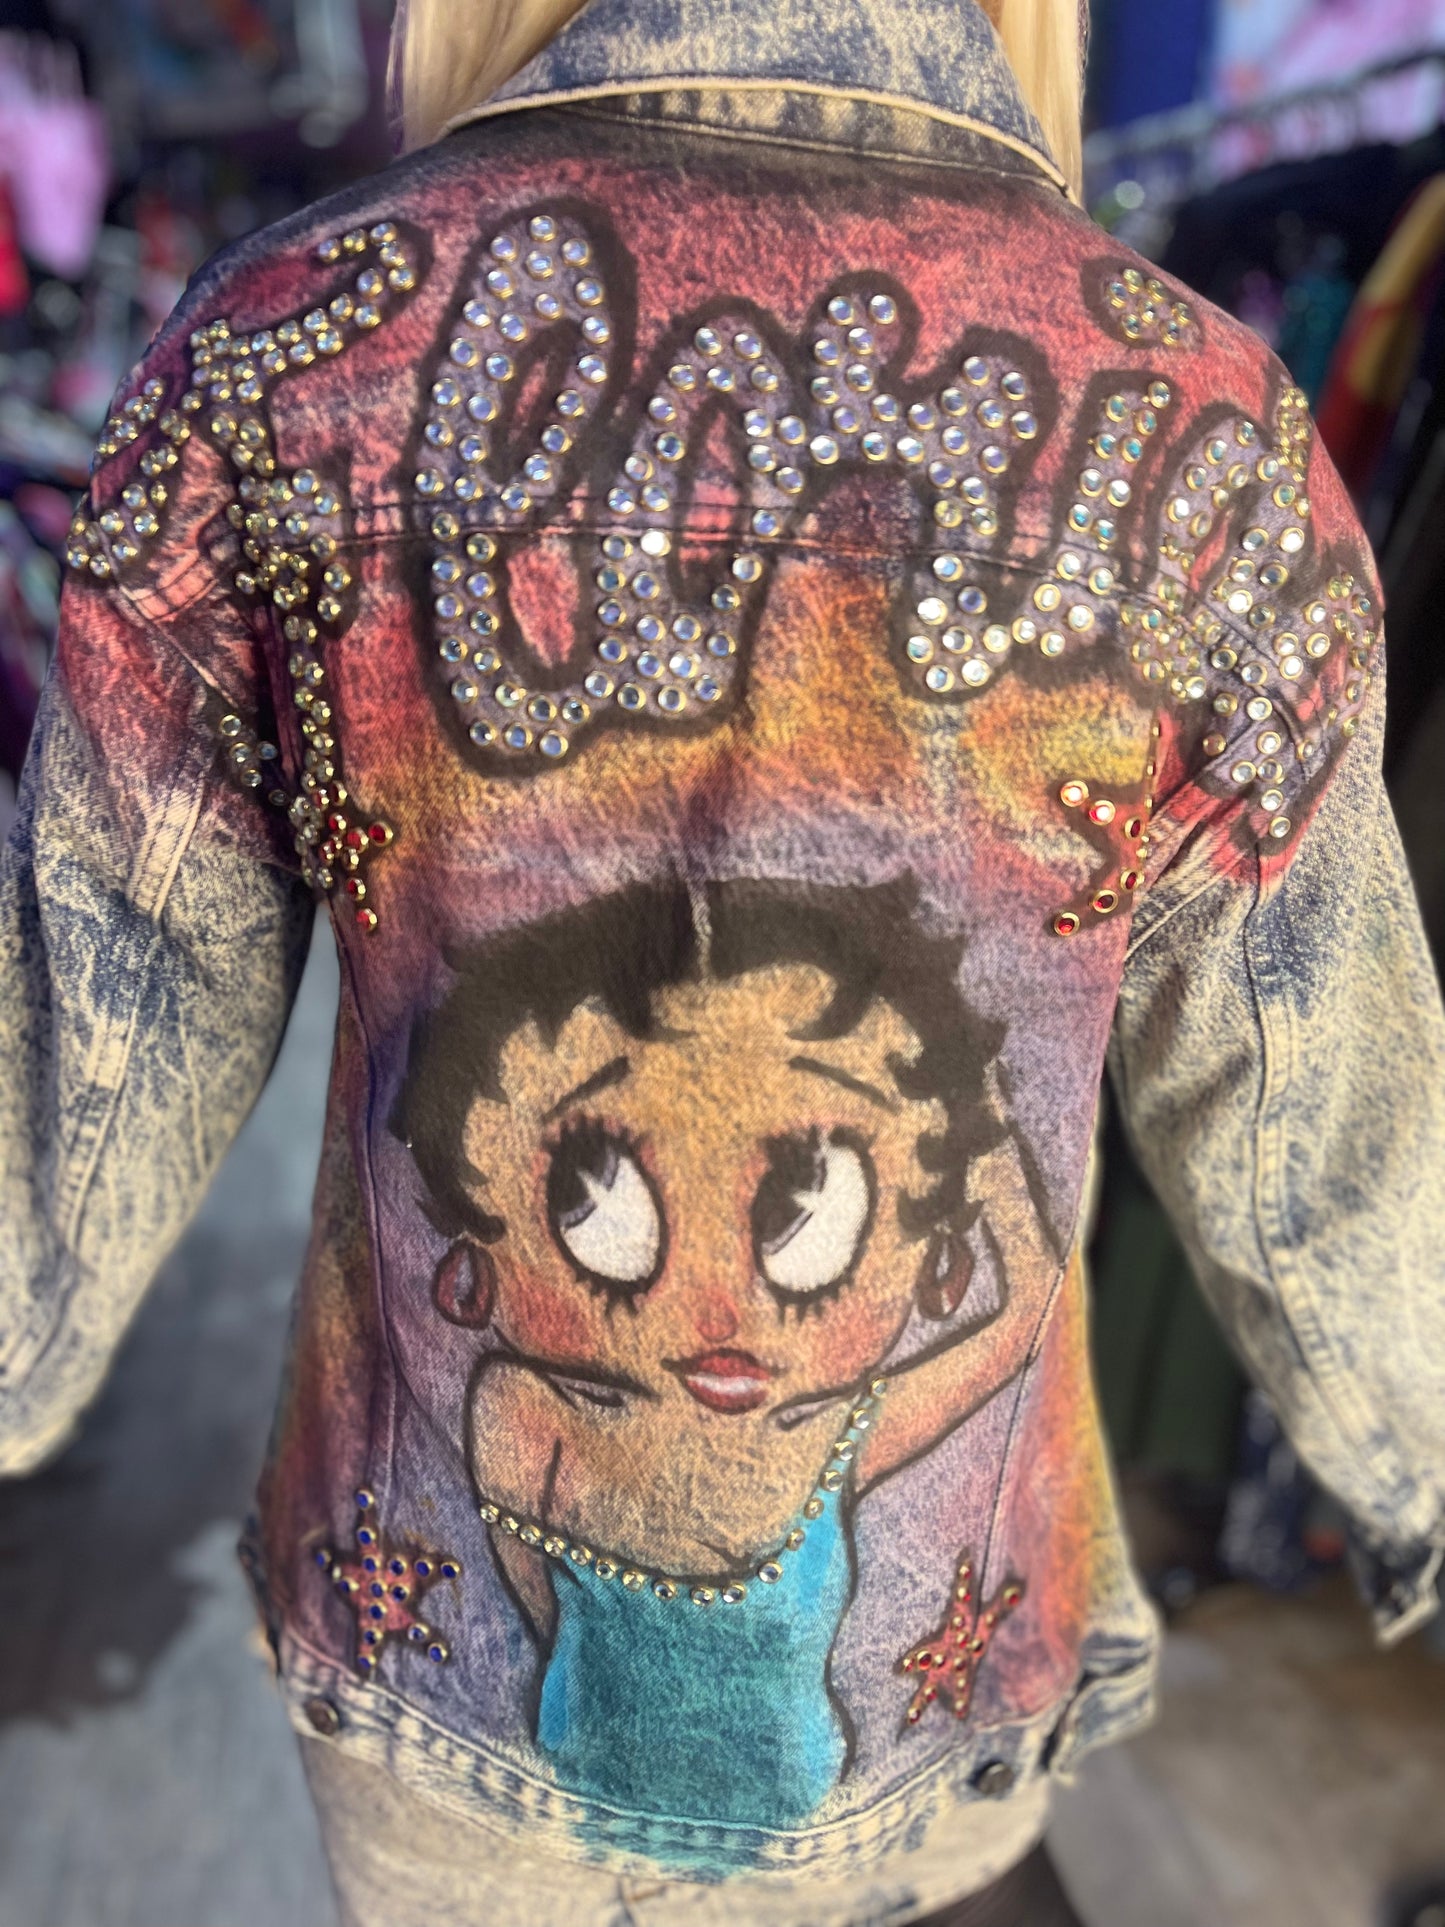 Vintage Acid Wash Betty Boop Rhinestone painted Jean jacket